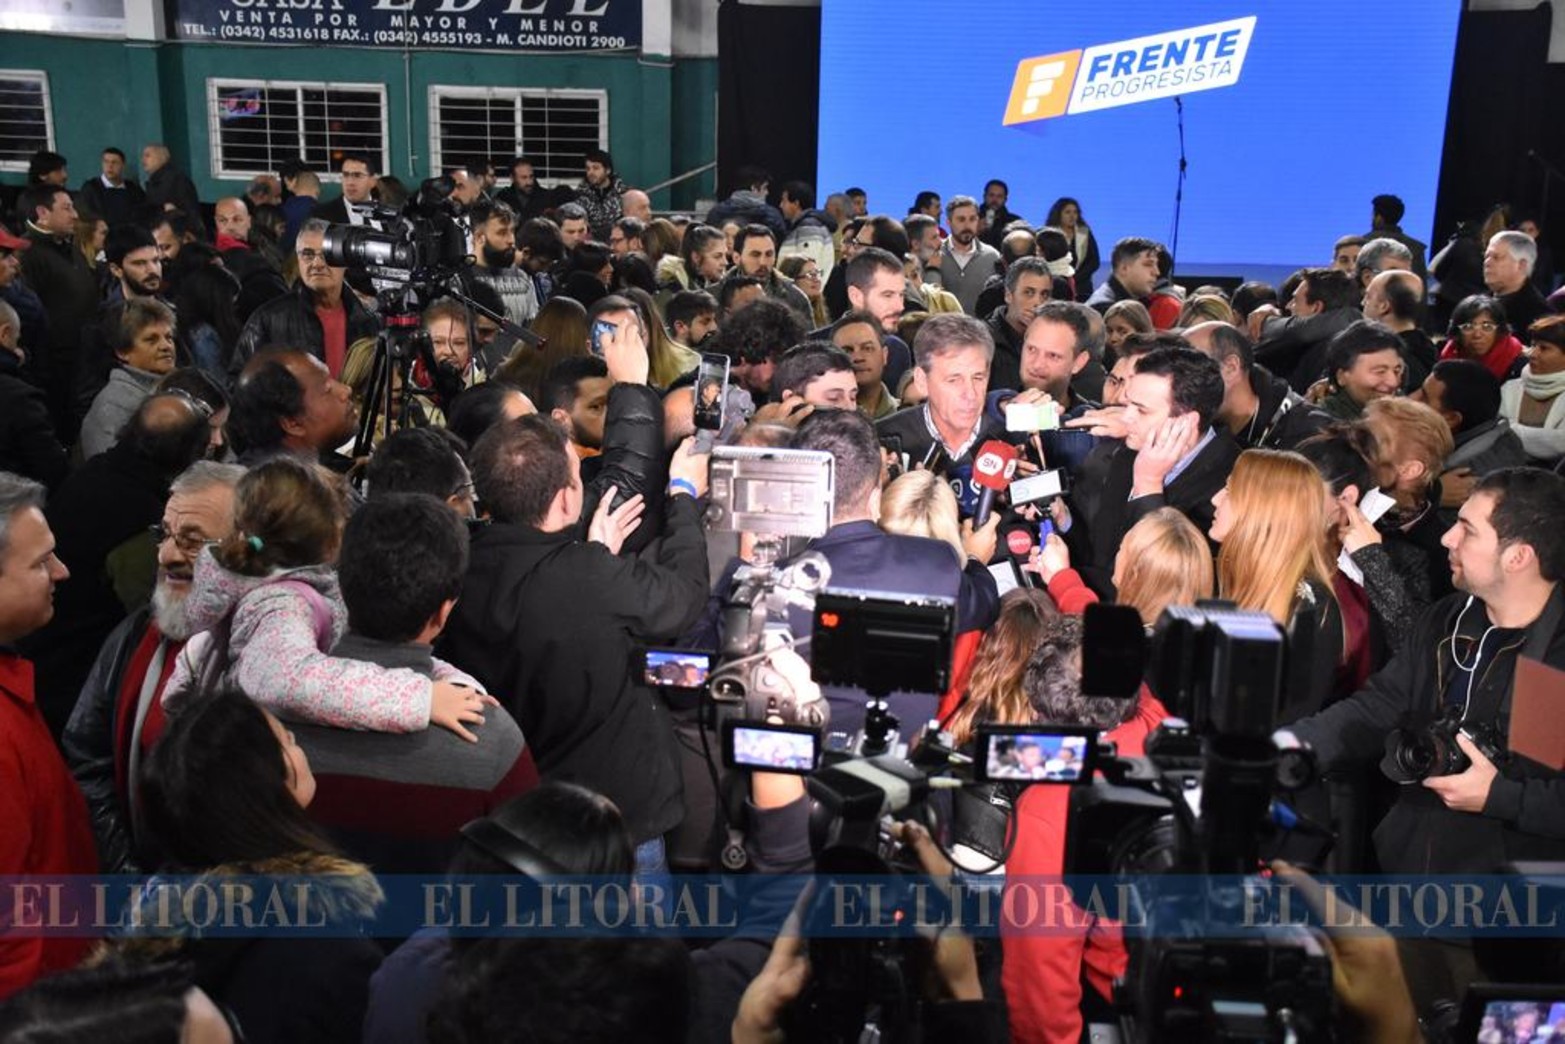 El intendente electo recibió las felicitaciones del presidente Mauricio Macri.